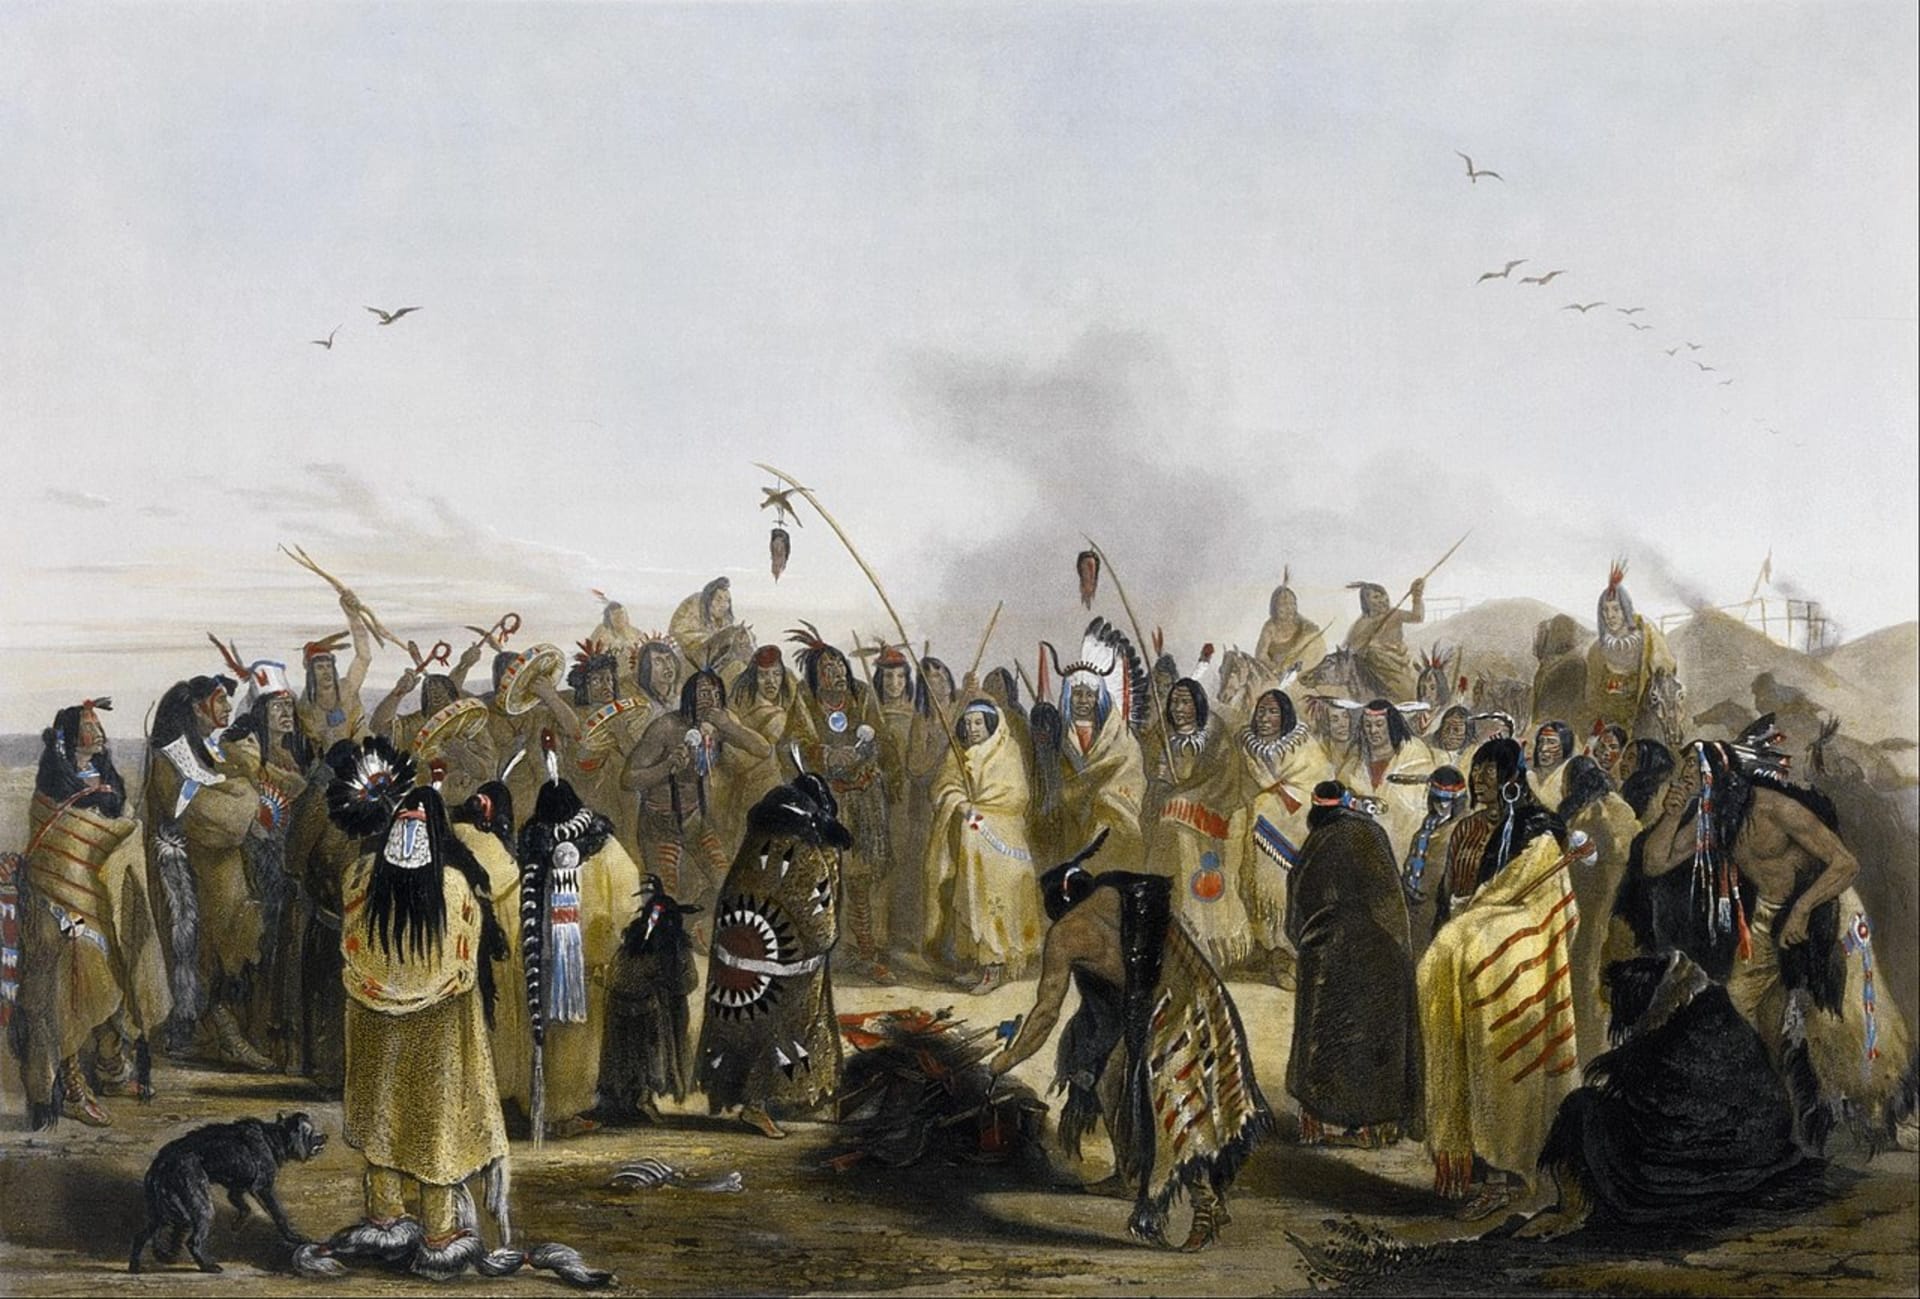 Siouxové tančí kolem skalpů zabitých nepřátel, kolem roku 1843